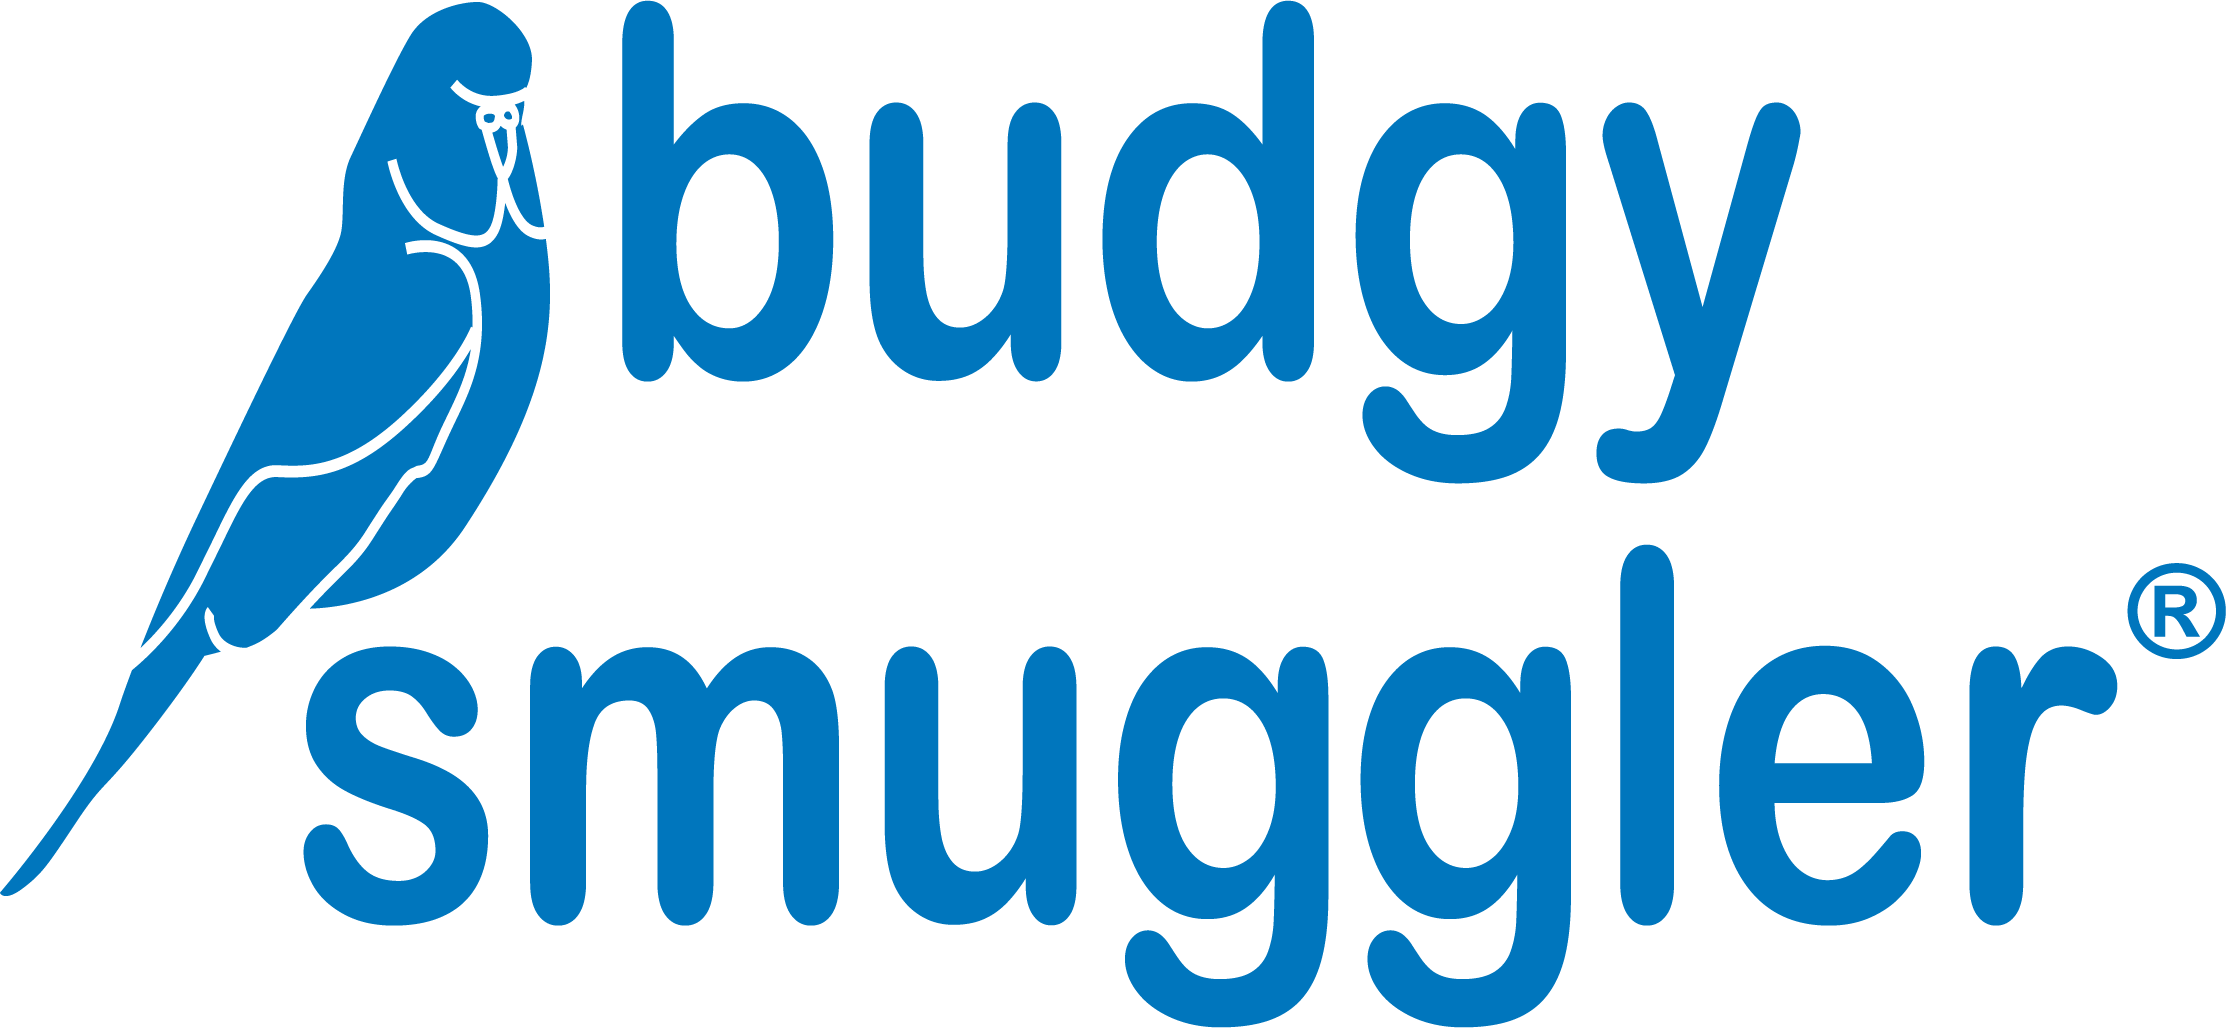 Budgy Smuggler Australia